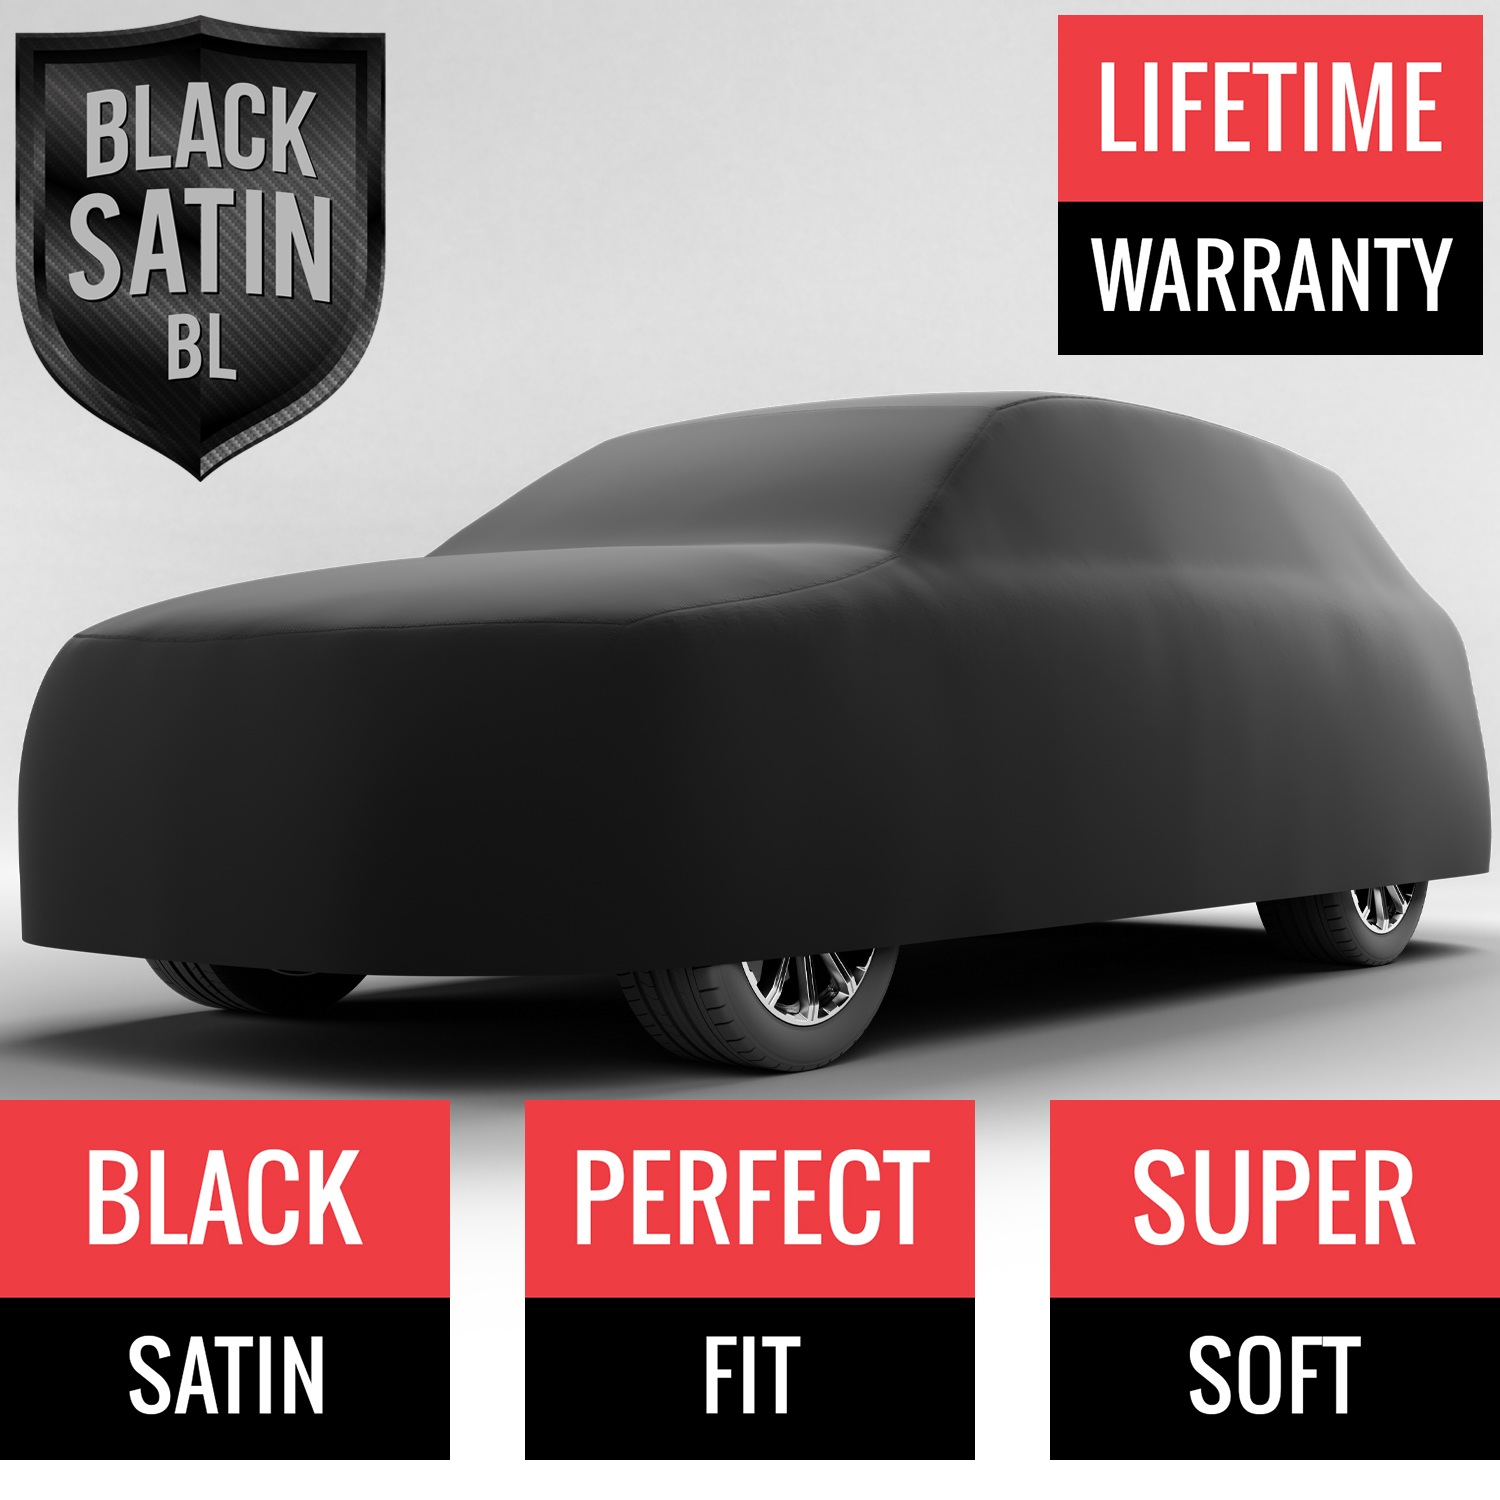 Black Satin BL - Black Car Cover for Mazda CX-9 2016 SUV 4-Door